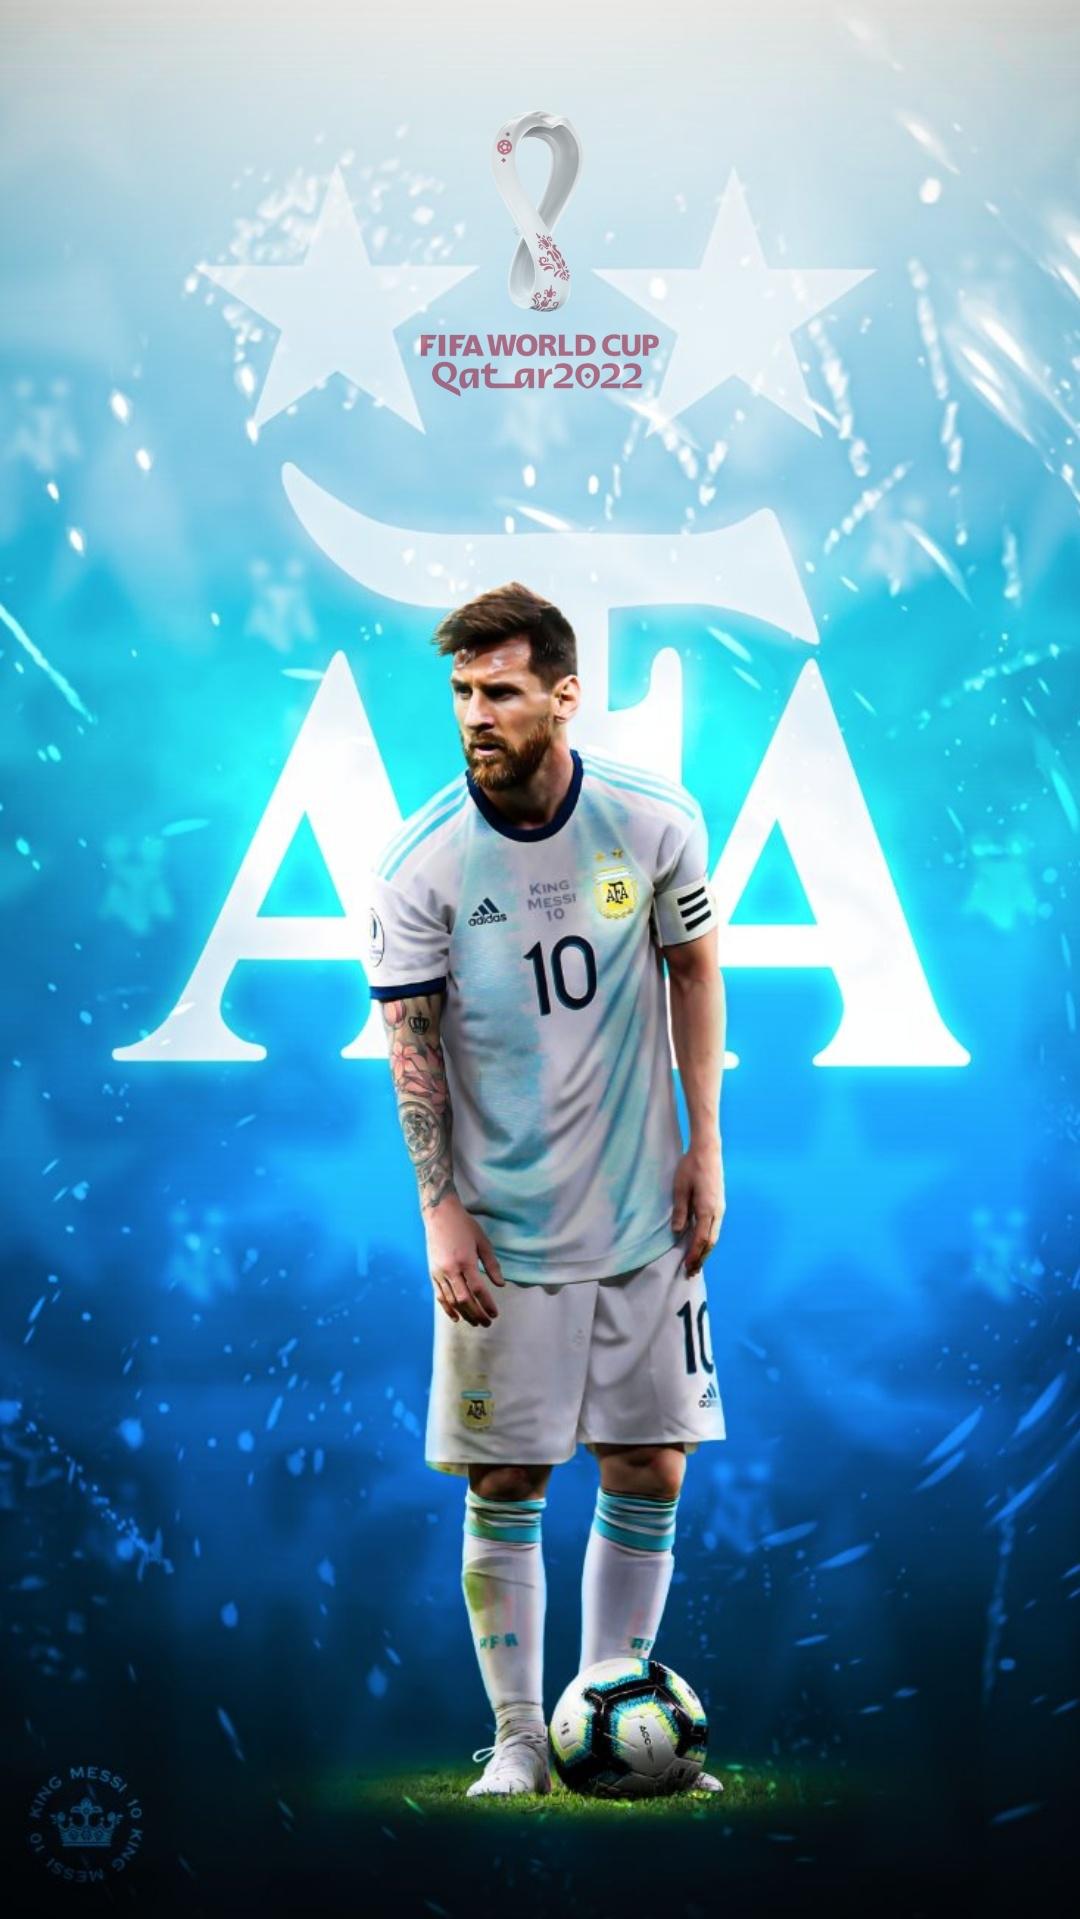 Một trong những siêu sao bóng đá hàng đầu thế giới - Messi luôn làm say lòng người hâm mộ với tài năng và những cú đá phạt đầy uy lực. Hãy cùng xem những hình ảnh nghệ thuật của Messi với những bàn thắng và kỹ thuật đỉnh cao, chắc chắn bạn sẽ không thể rời mắt khỏi bức tranh bóng đá đầy màu sắc này!